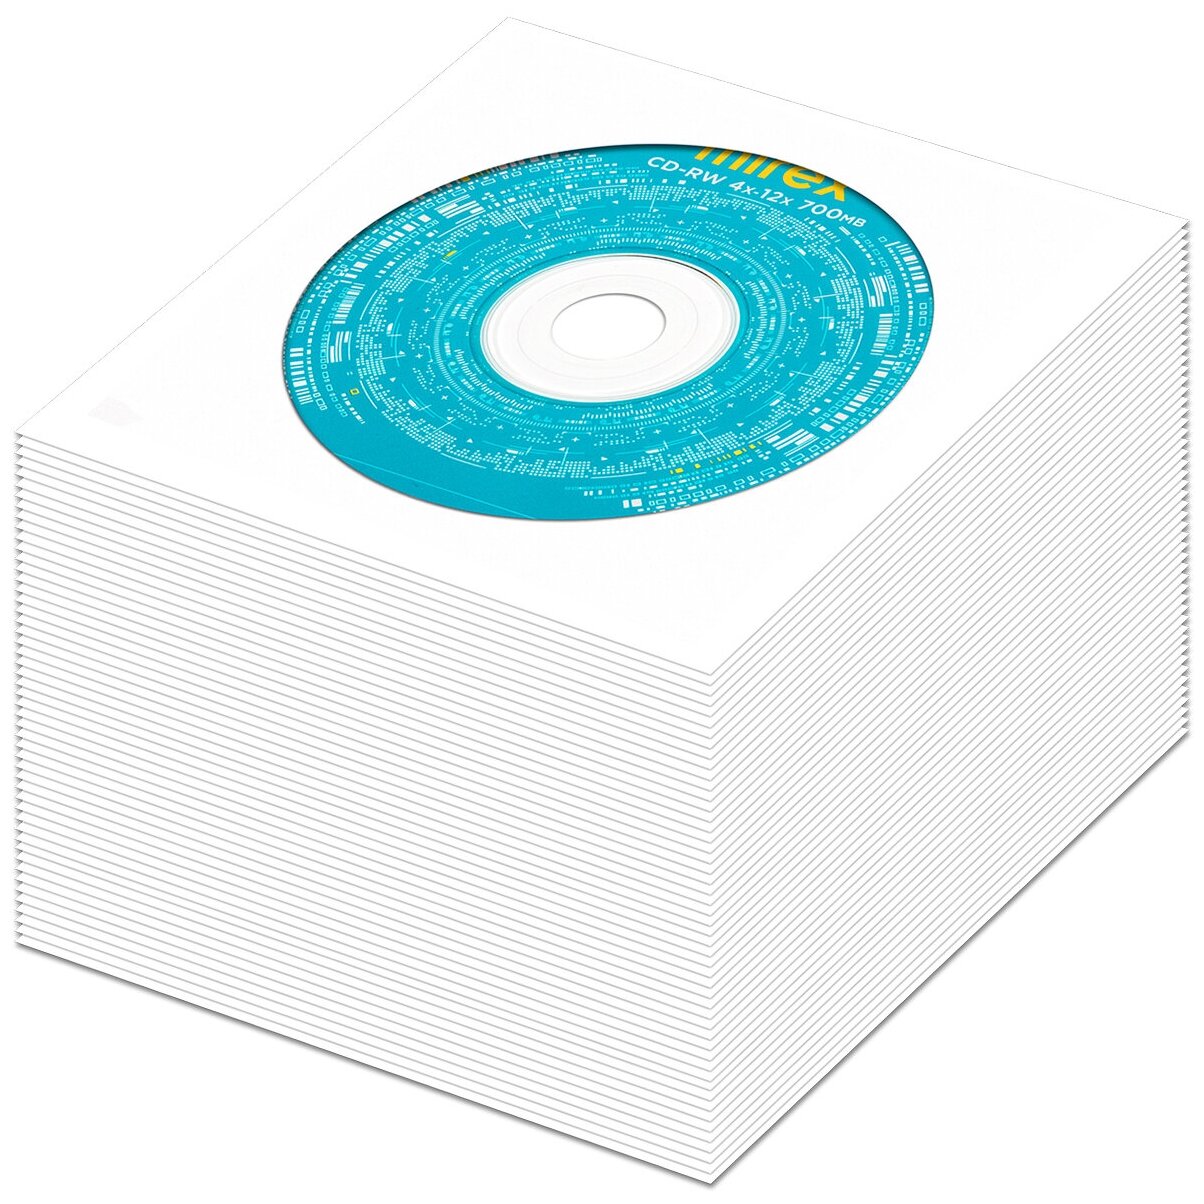 Перезаписываемый диск CD-RW 700Mb 12x Mirex в бумажном конверте с окном, 50 шт.